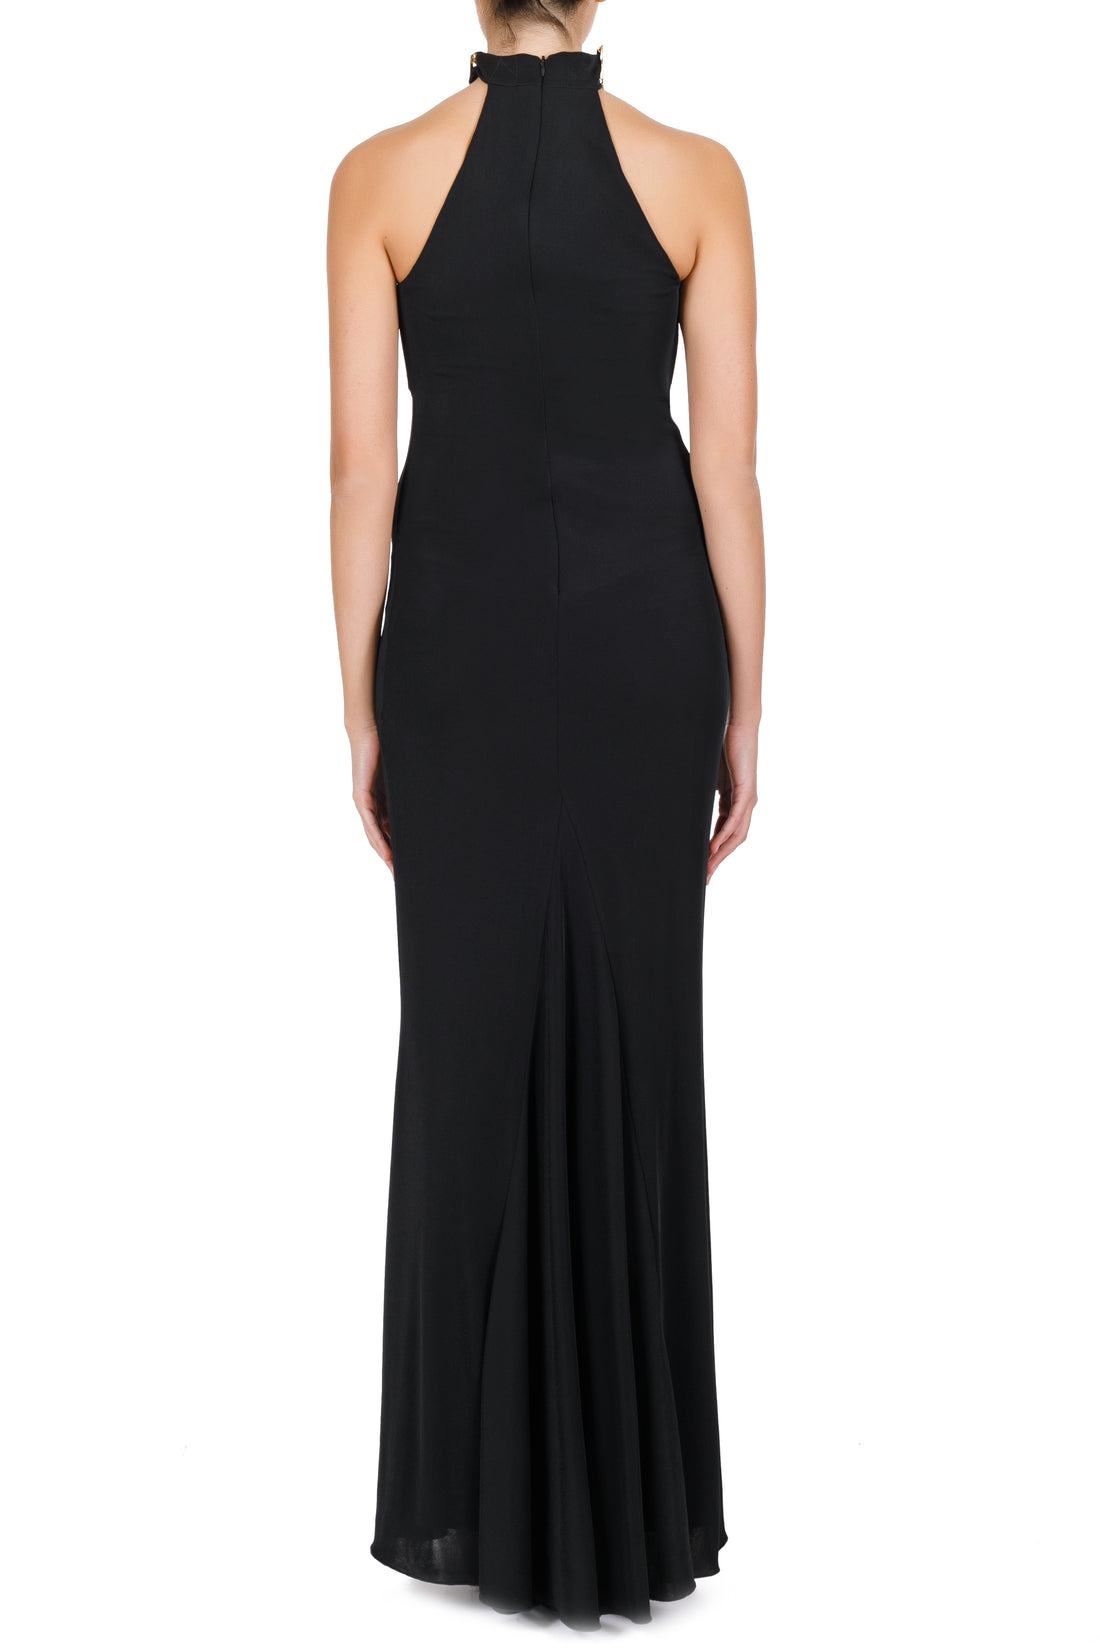 Kassandra black maxi dress